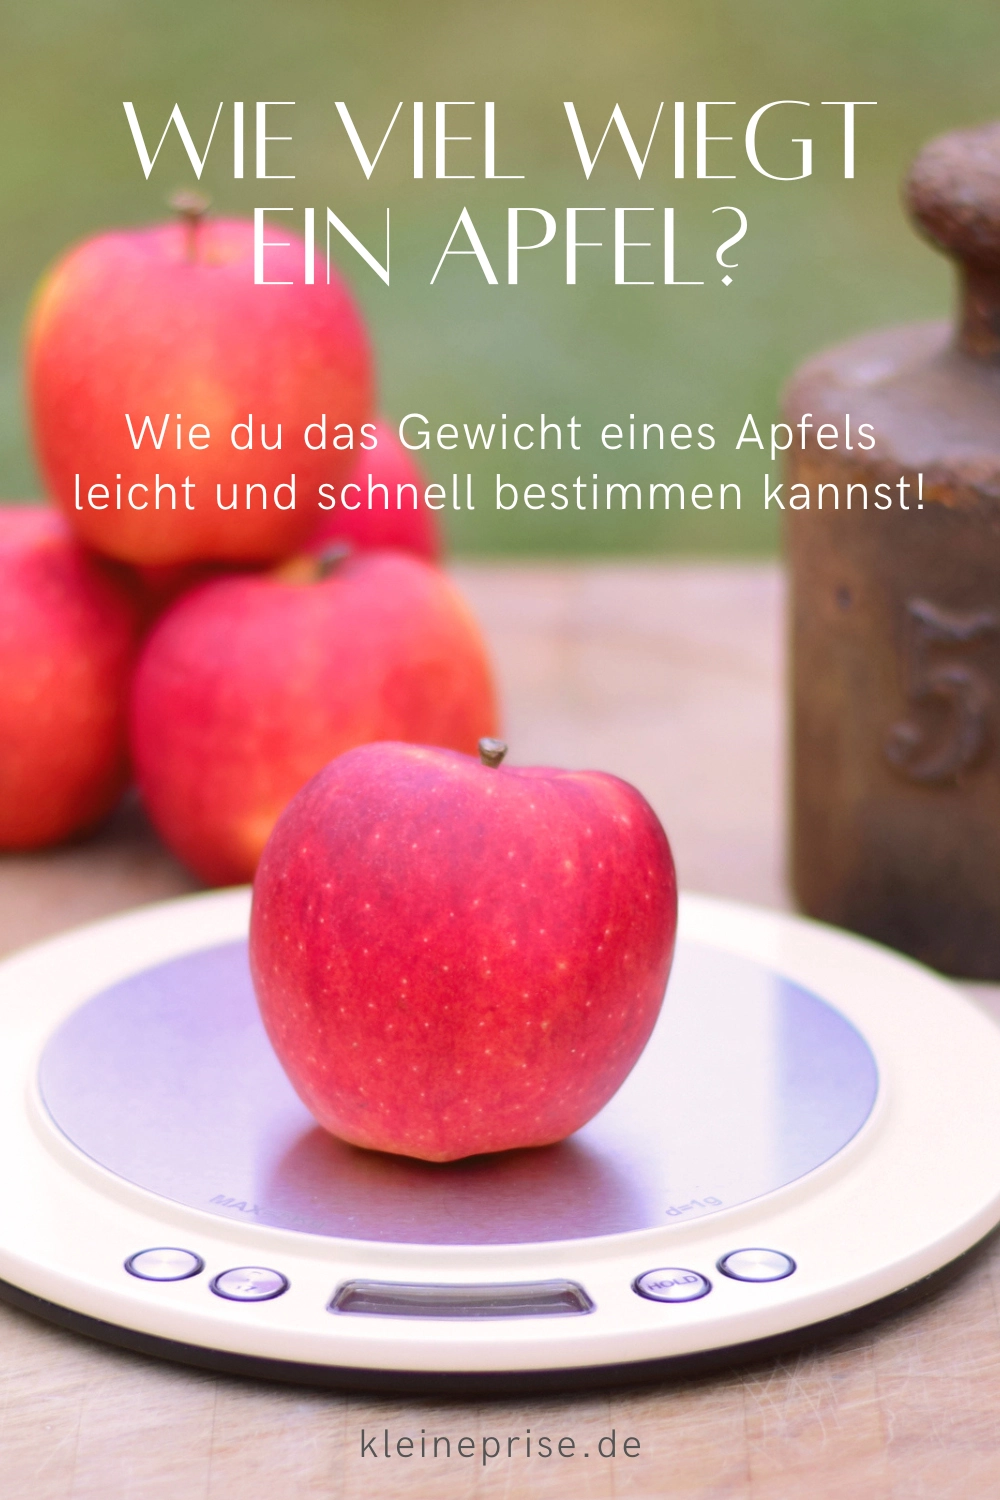 Pin es bei Pinterest: Wie viel wiegt ein Apfel?